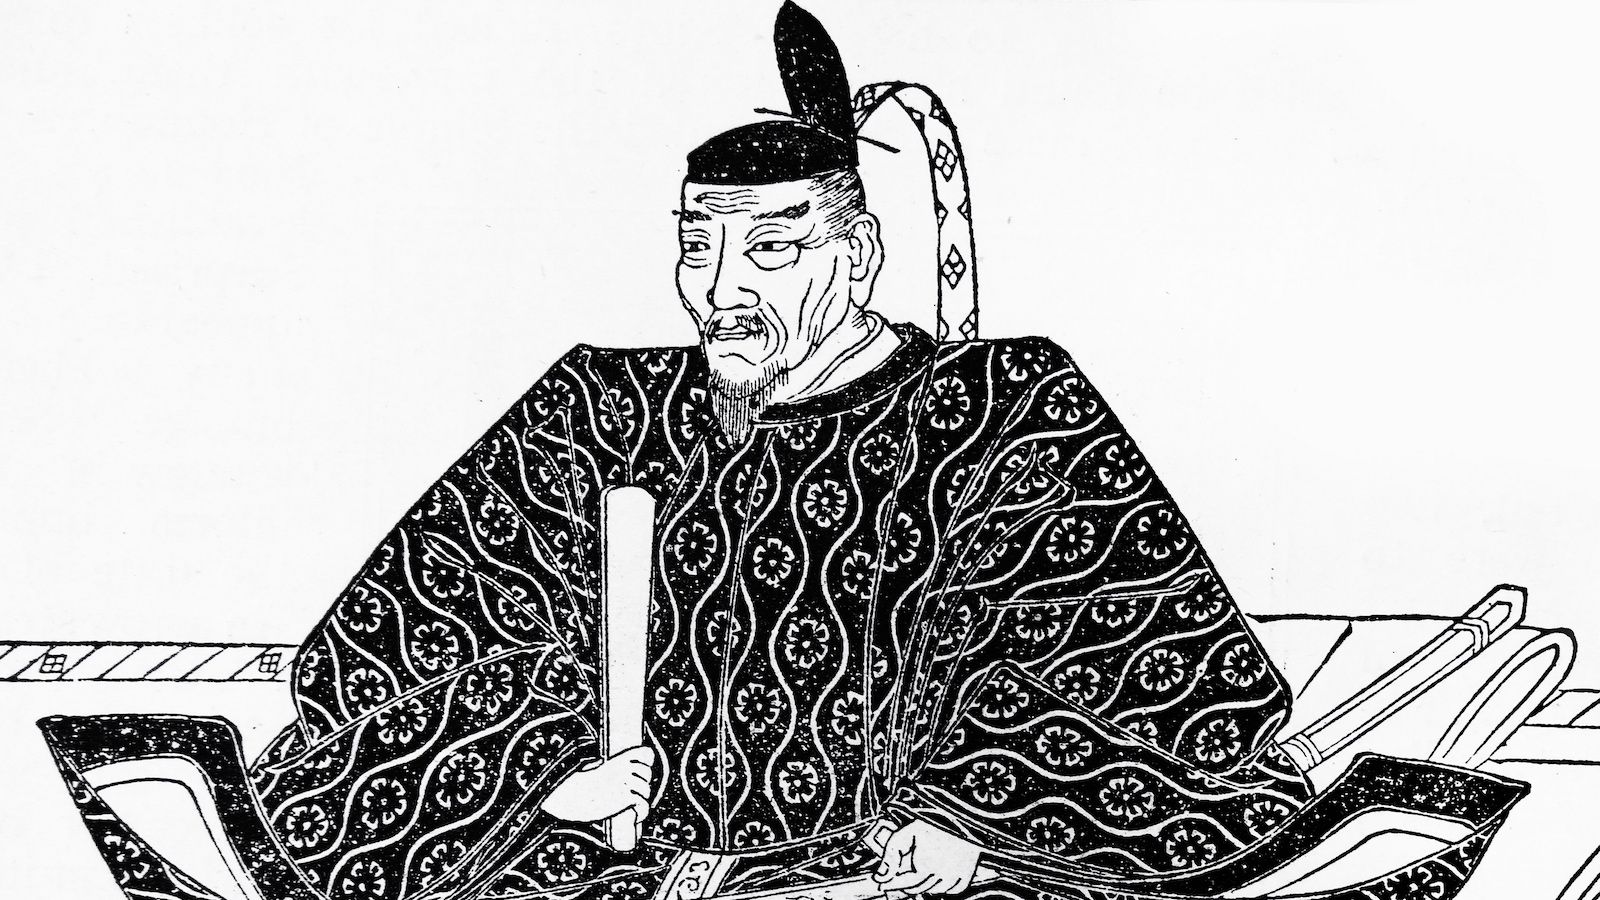 日本人の奴隷化｣を食い止めた豊臣秀吉の大英断 | リーダーシップ・教養 